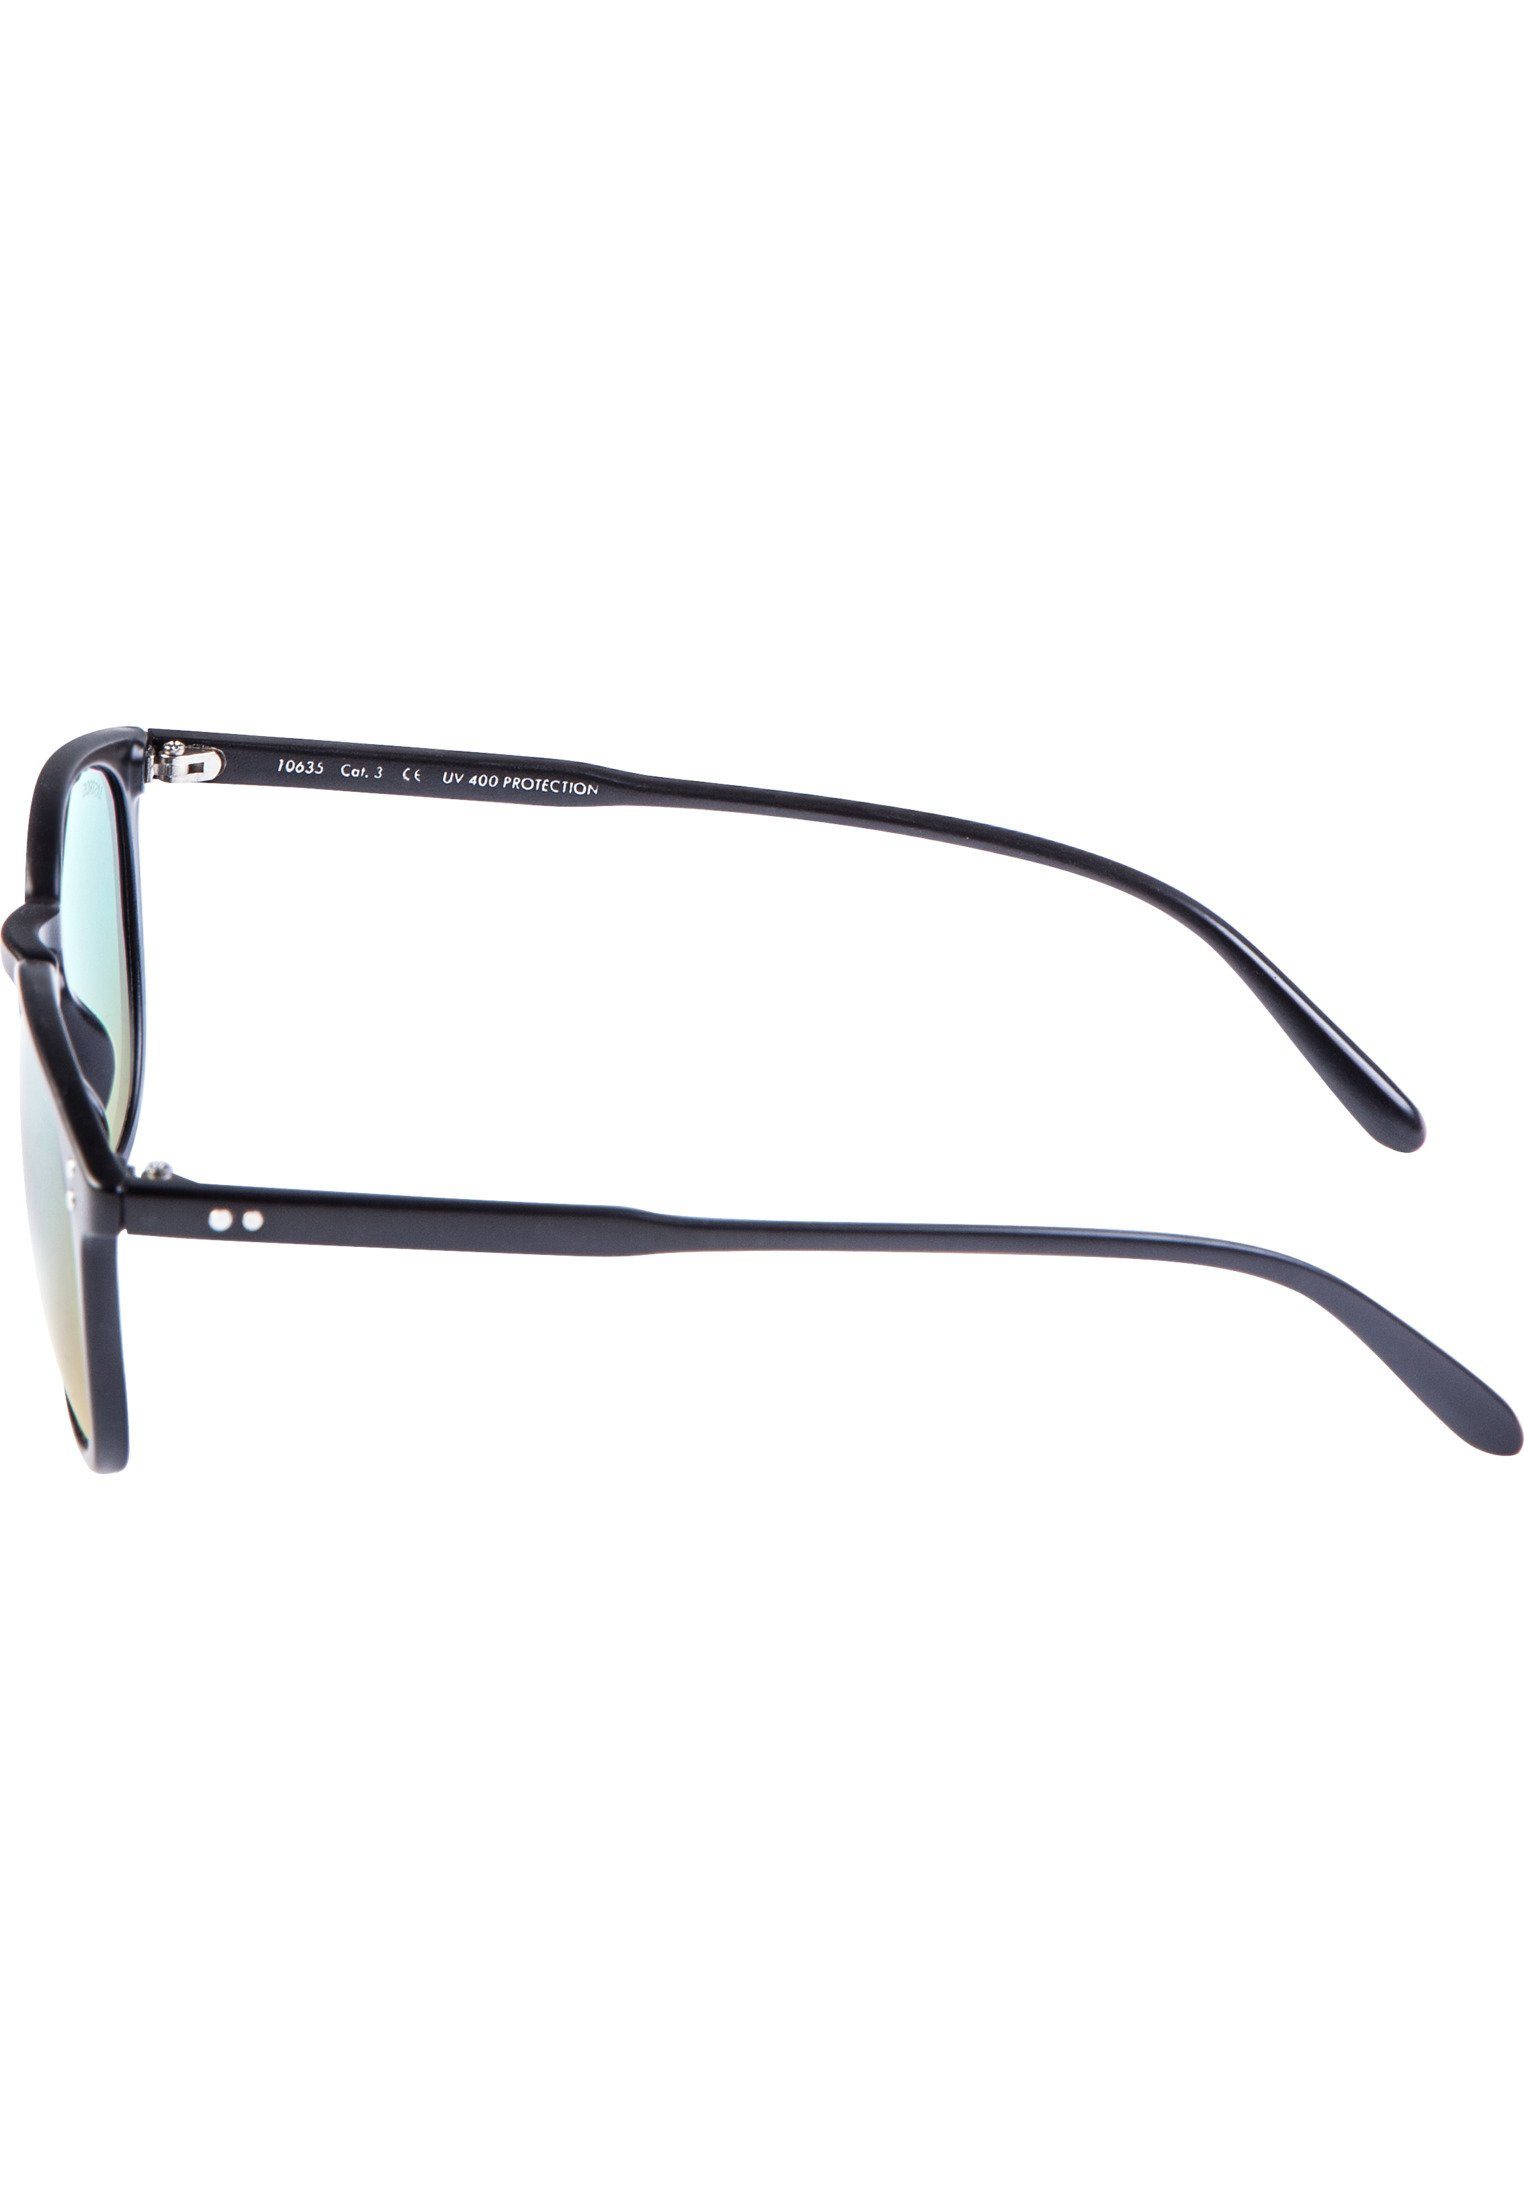 MSTRDS Sonnenbrille Accessoires Sunglasses blk/blue Arthur